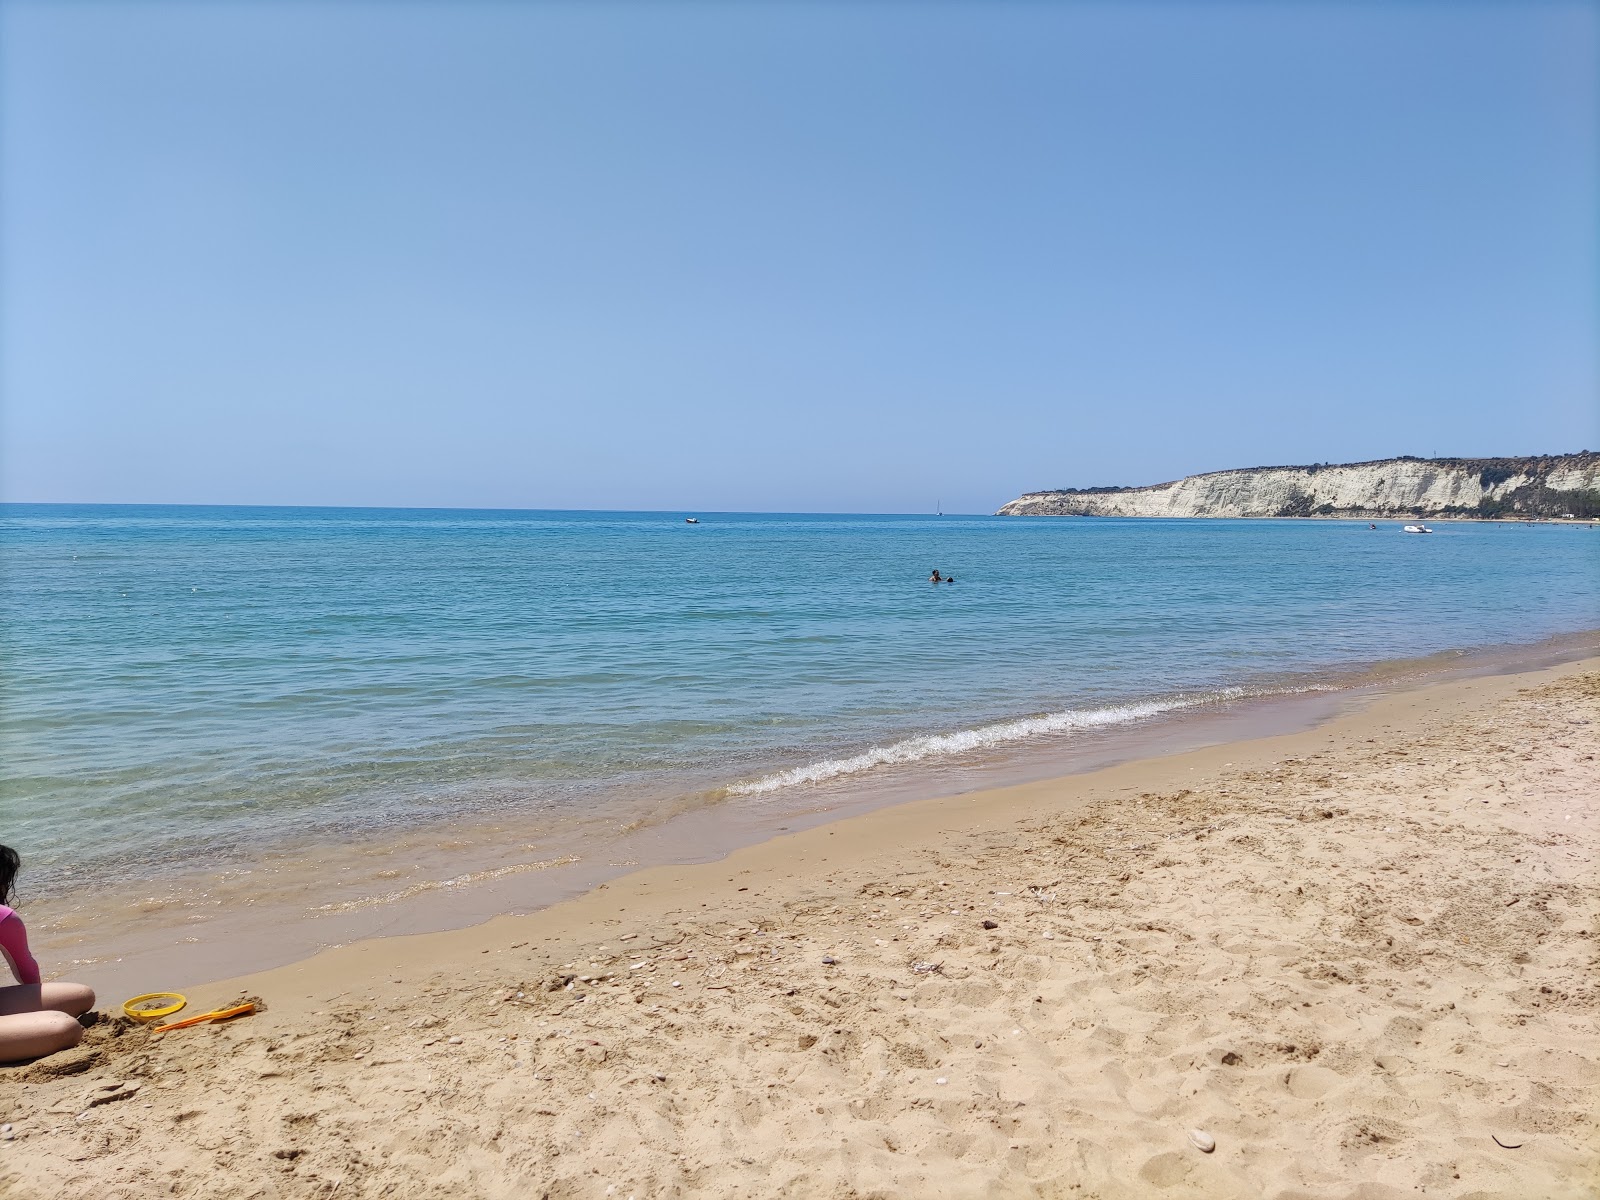 Foto af Spiaggia Di Eraclea Minoa - populært sted blandt afslapningskendere